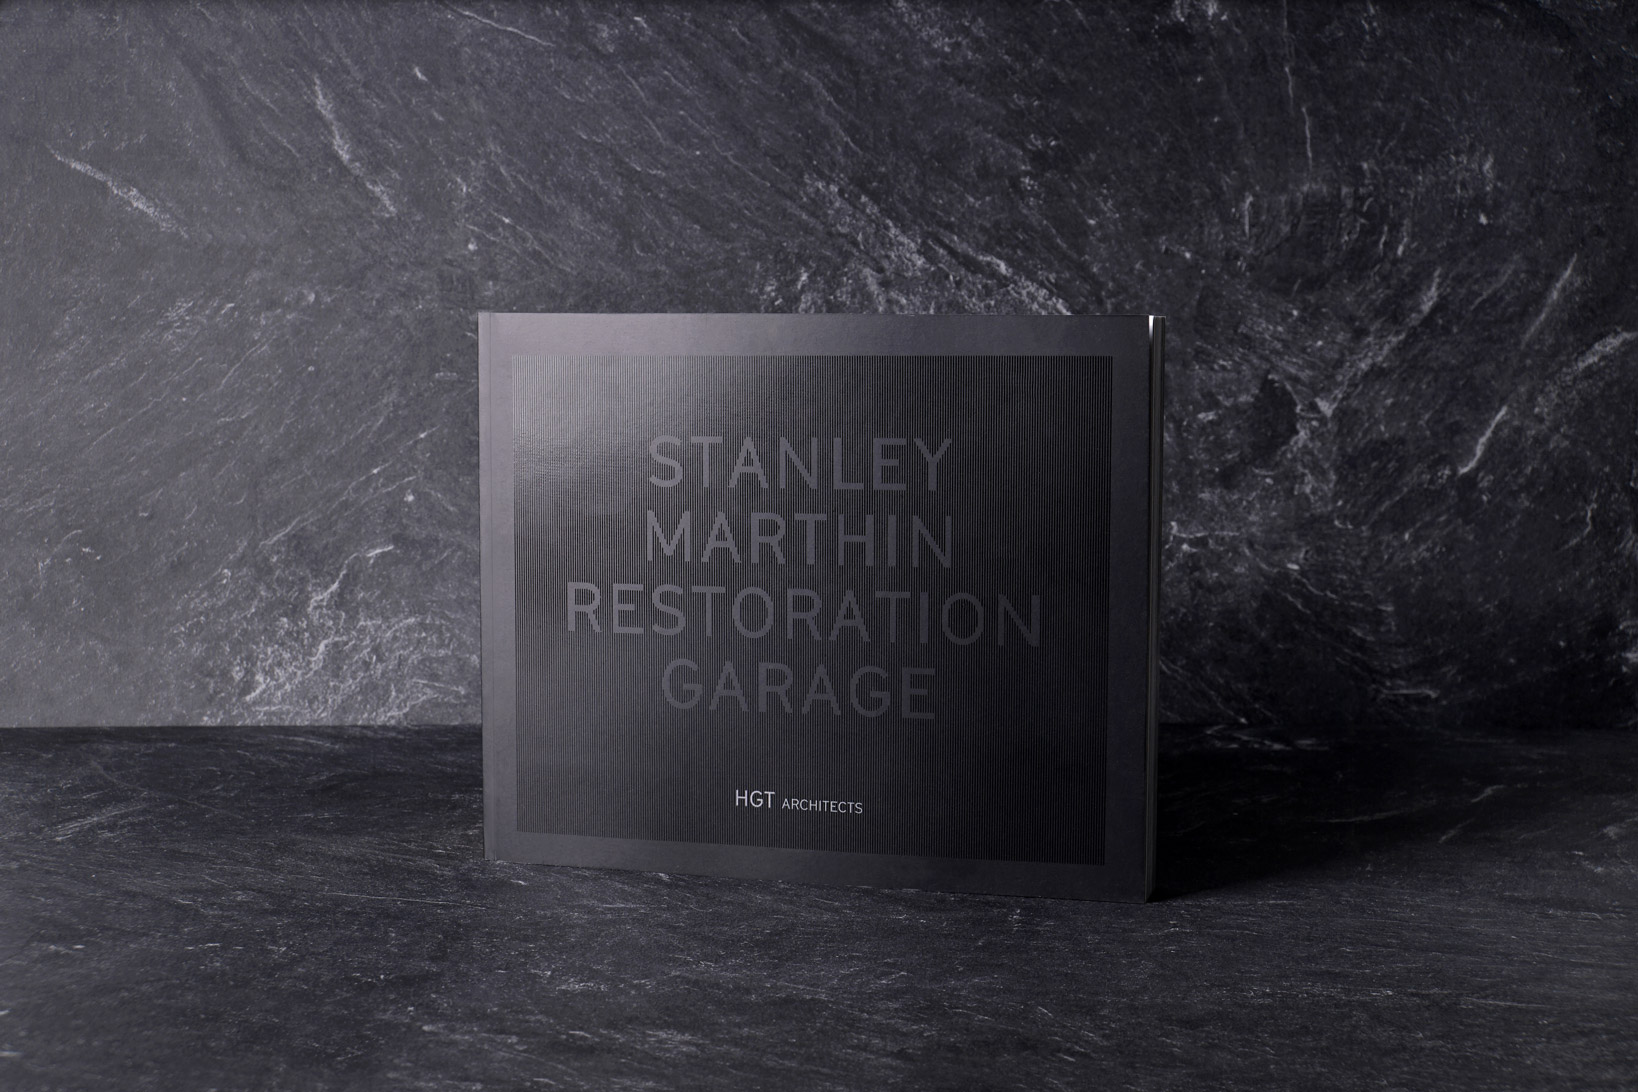 Stanley Marthin Restoration Garage